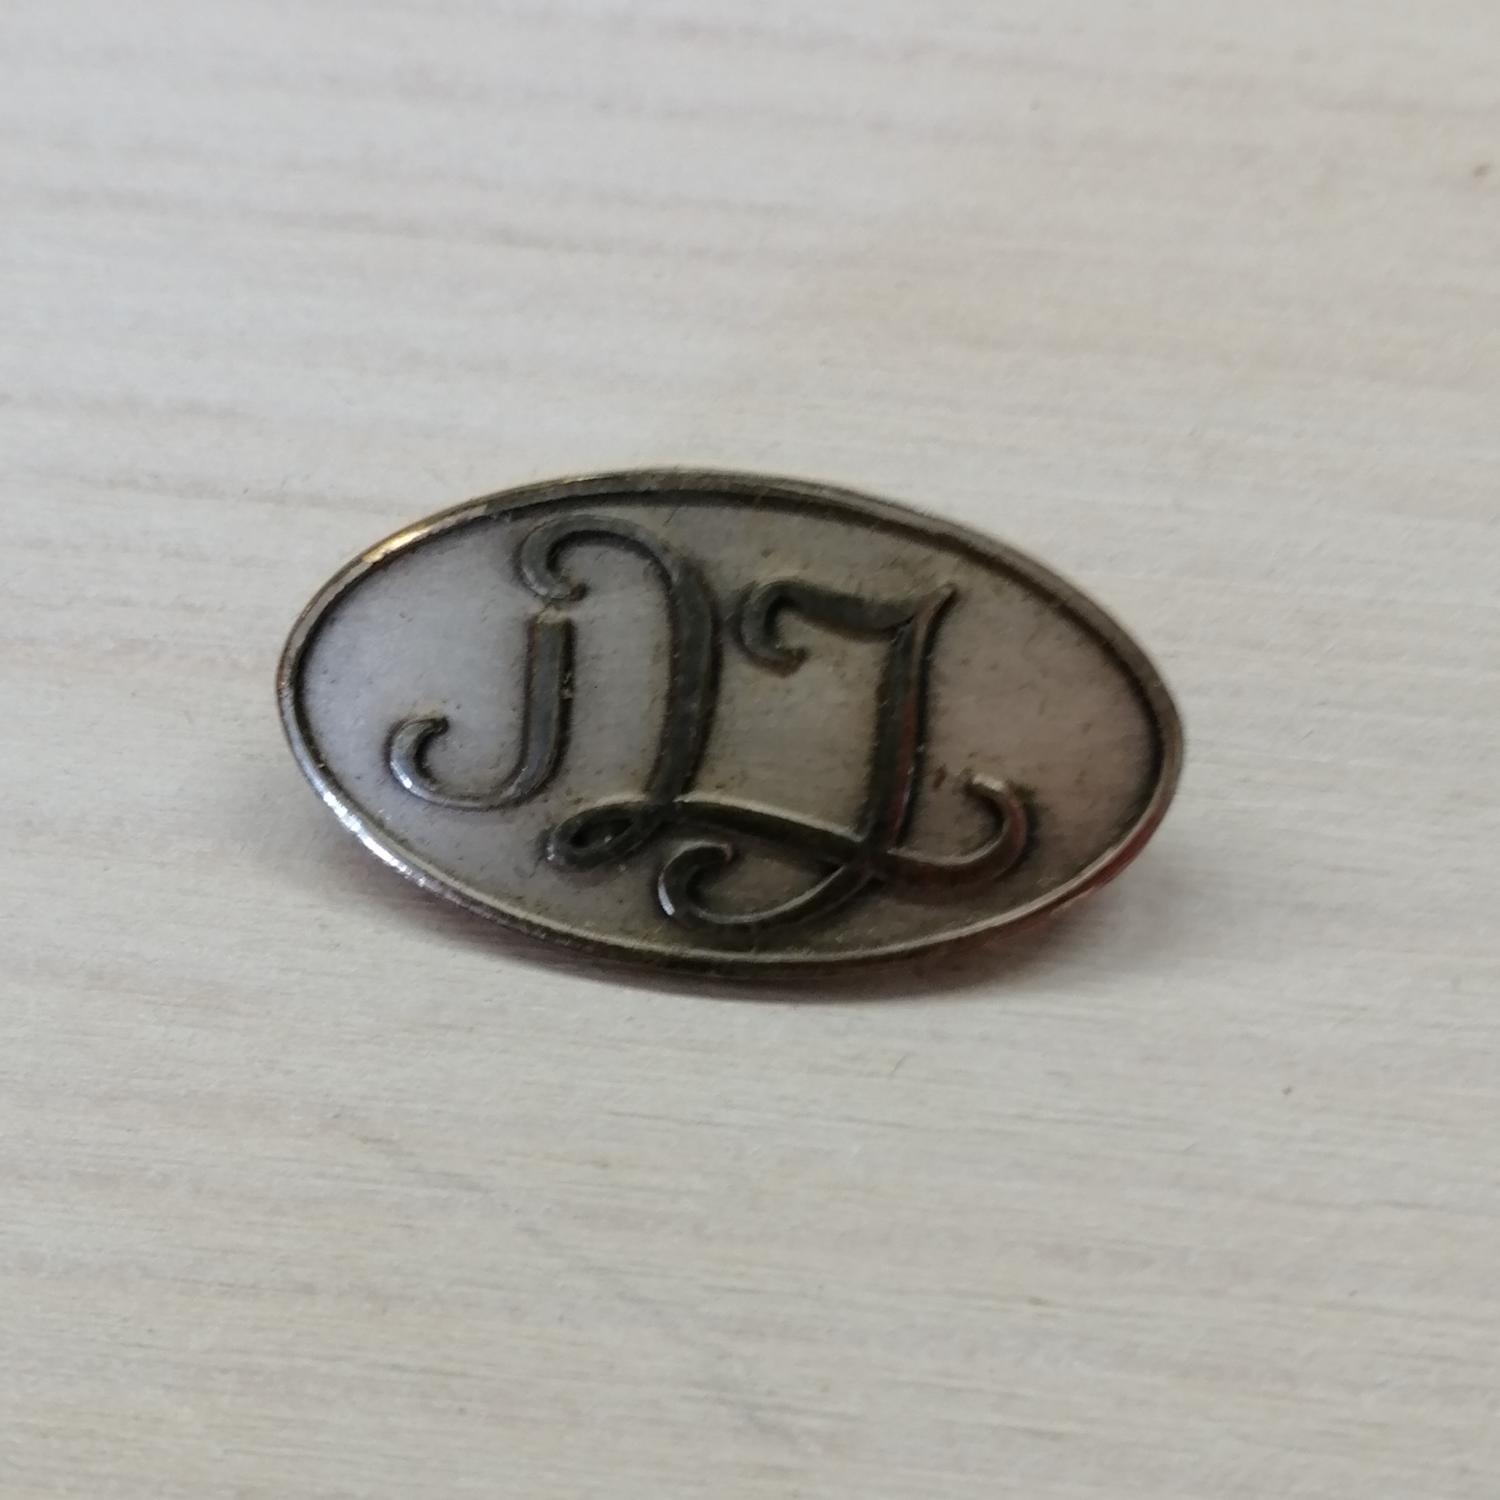 Vintage bijouteri brosch liten oval silverf initialer DL kanske